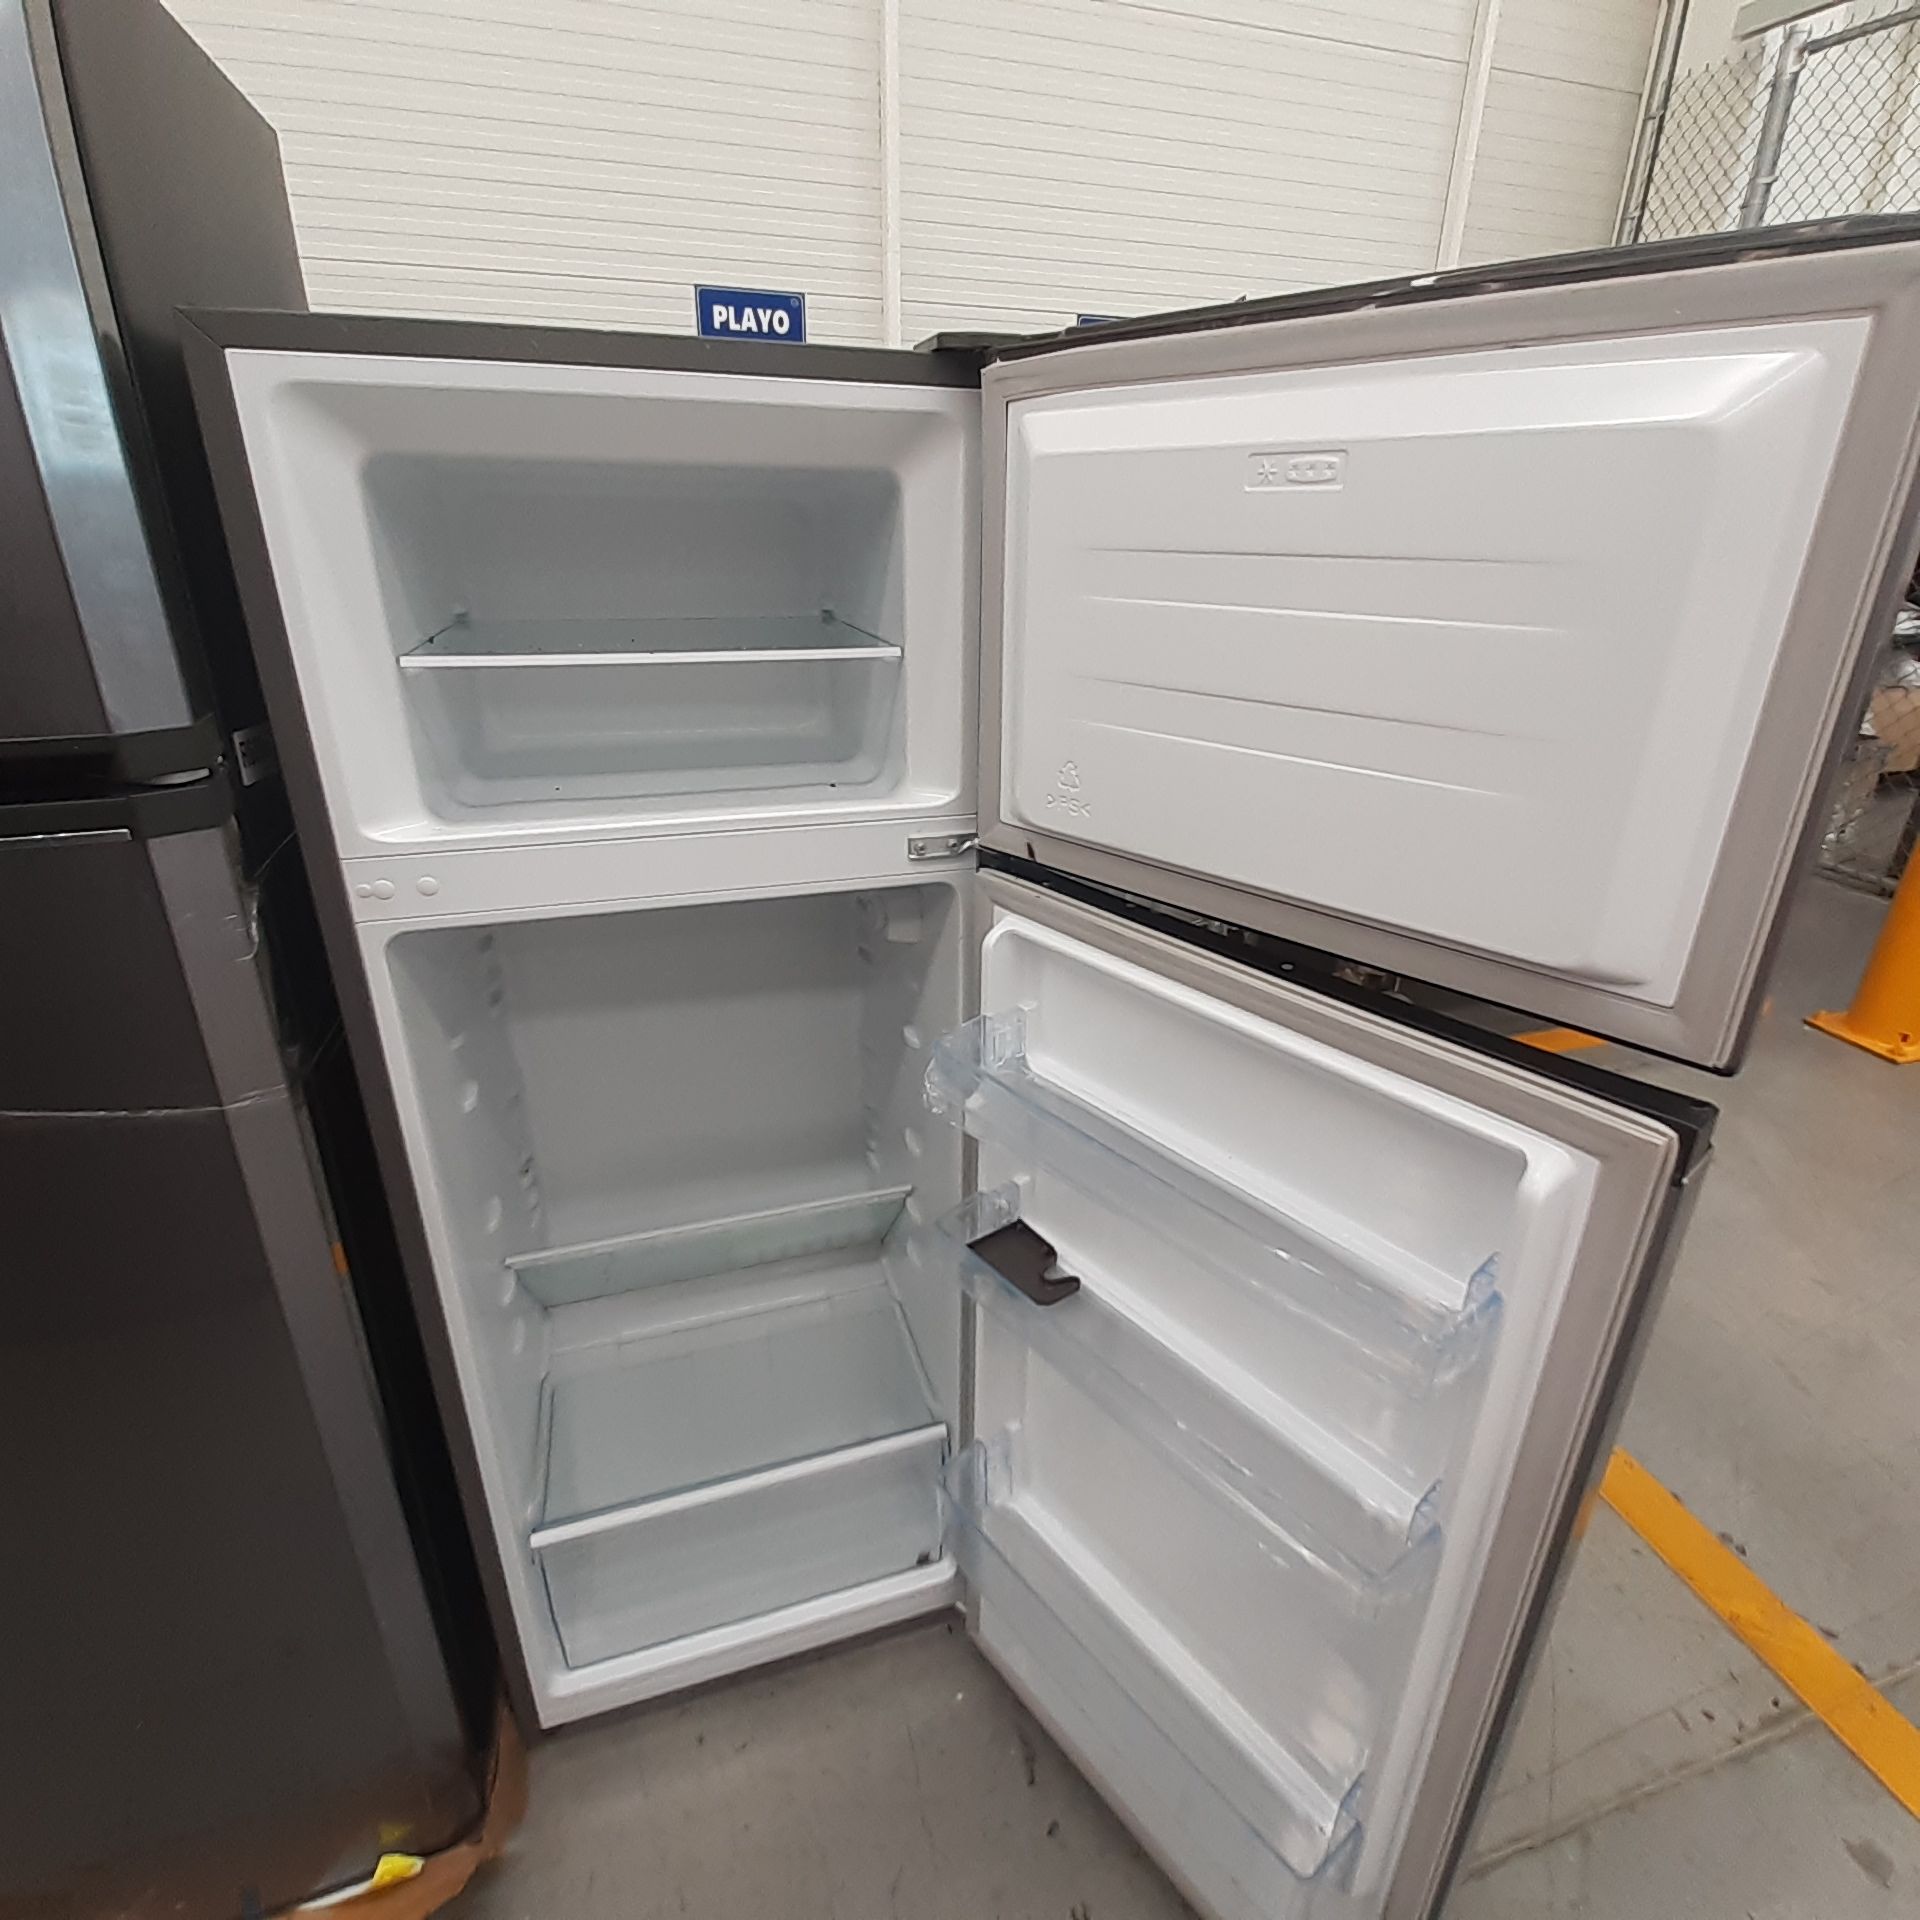 Lote De 2 Refrigeradores Contiene: 1 Refrigerador Marca Mabe, 1 Refrigerador Marca Hisense, Distinto - Image 11 of 14